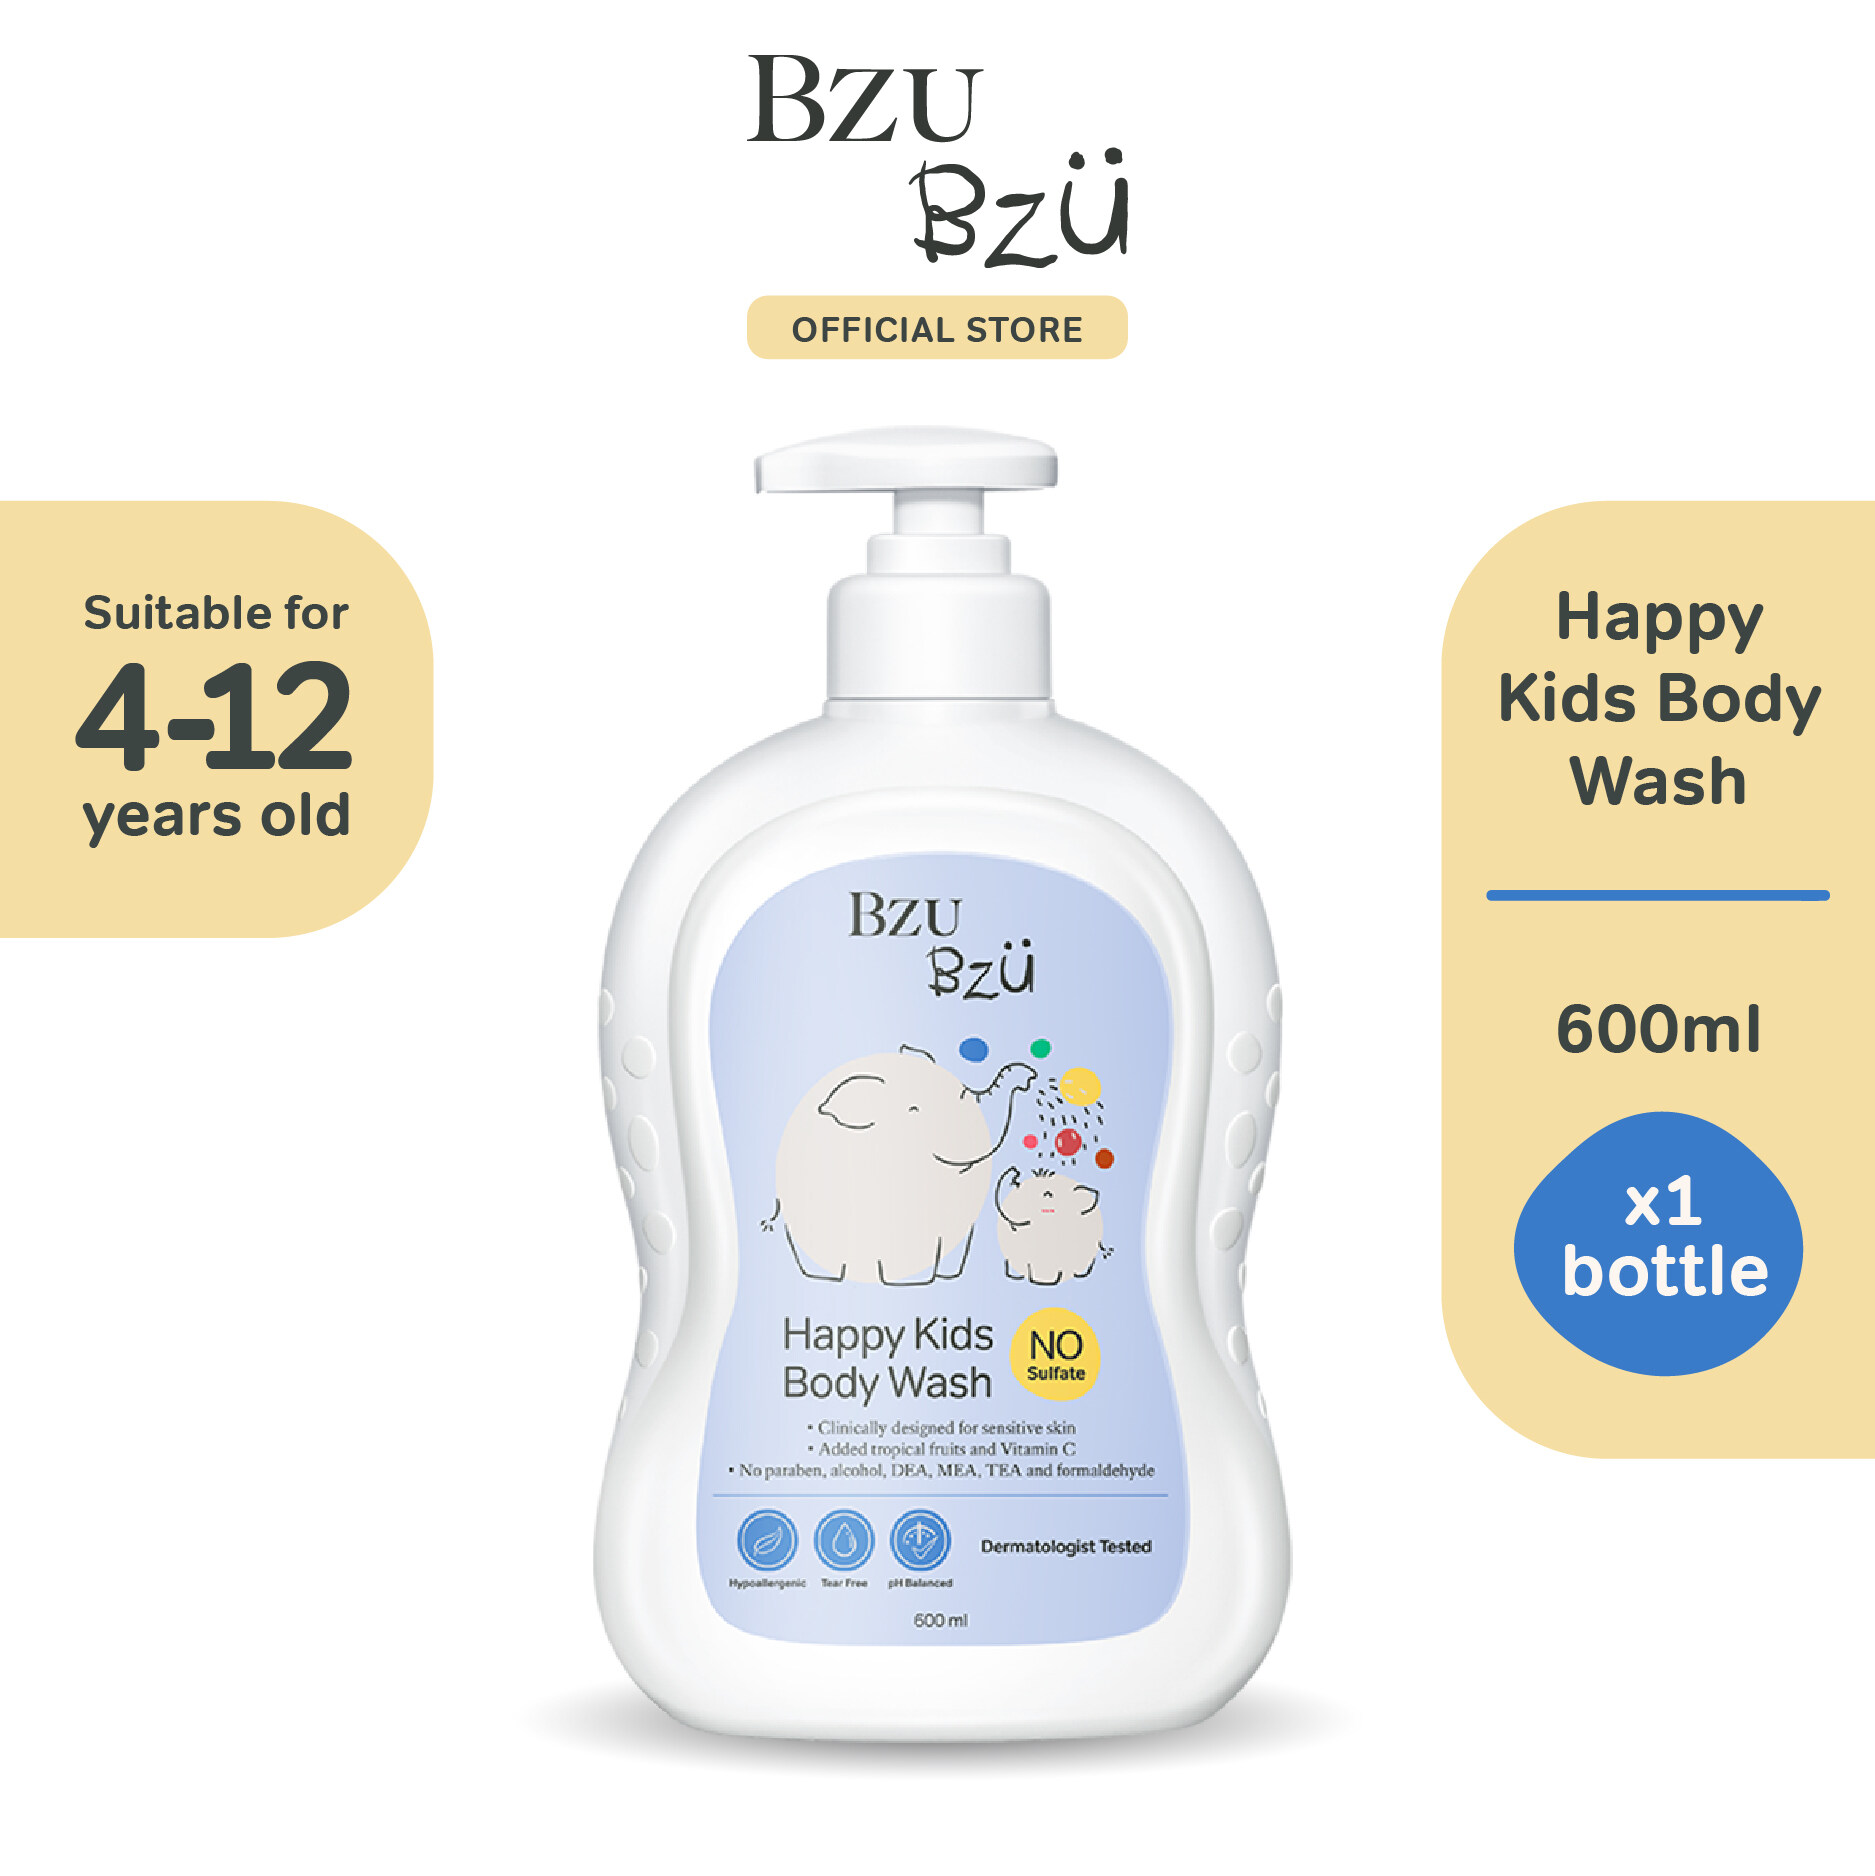 BZU BZU Happy Kids Body Wash (600ml)